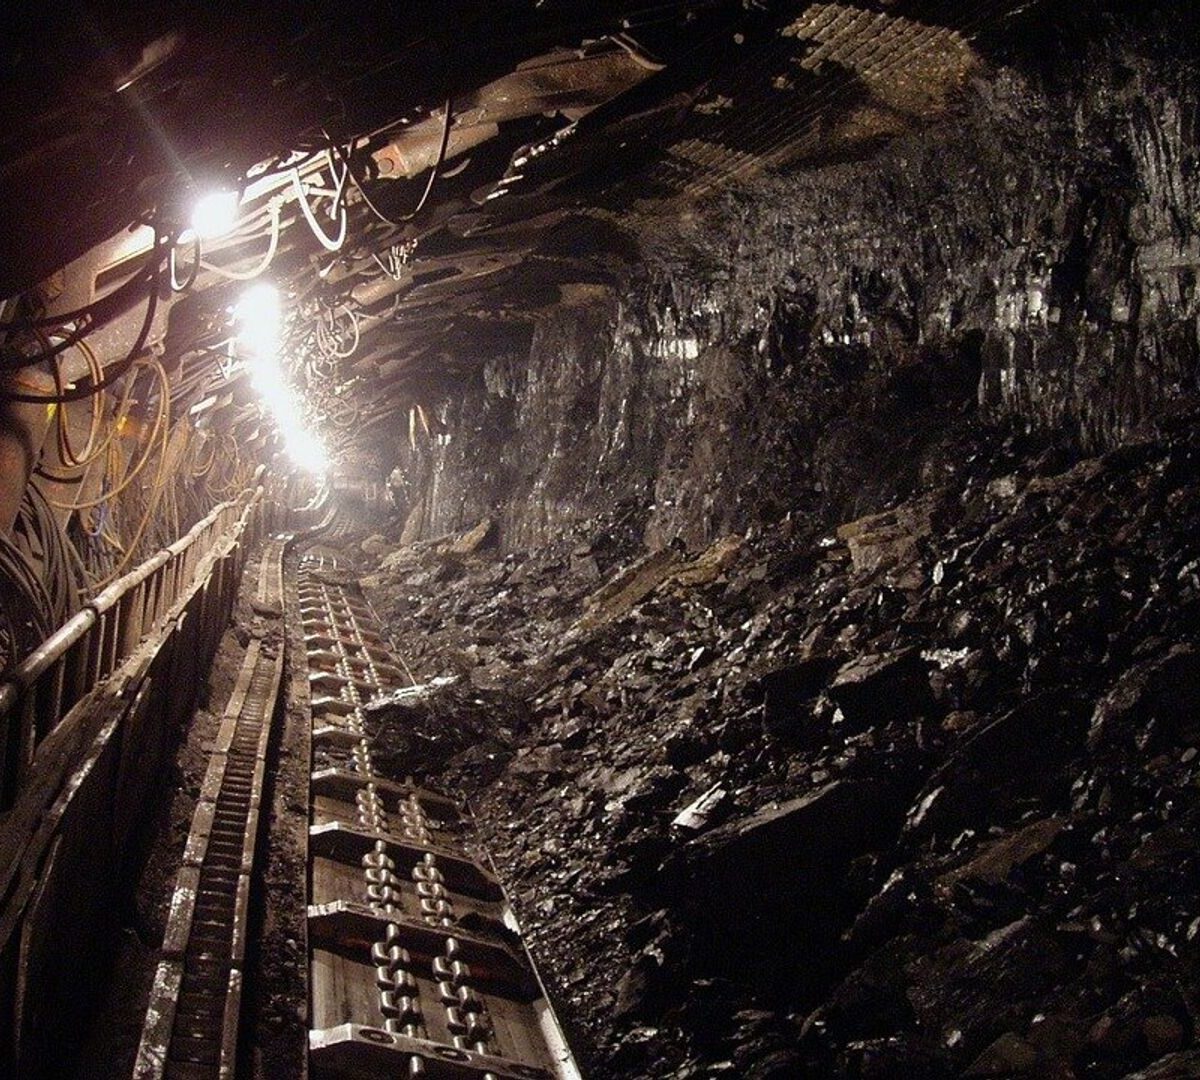 Siete mineros atrapados luego de una explosión en una mina en Colombia